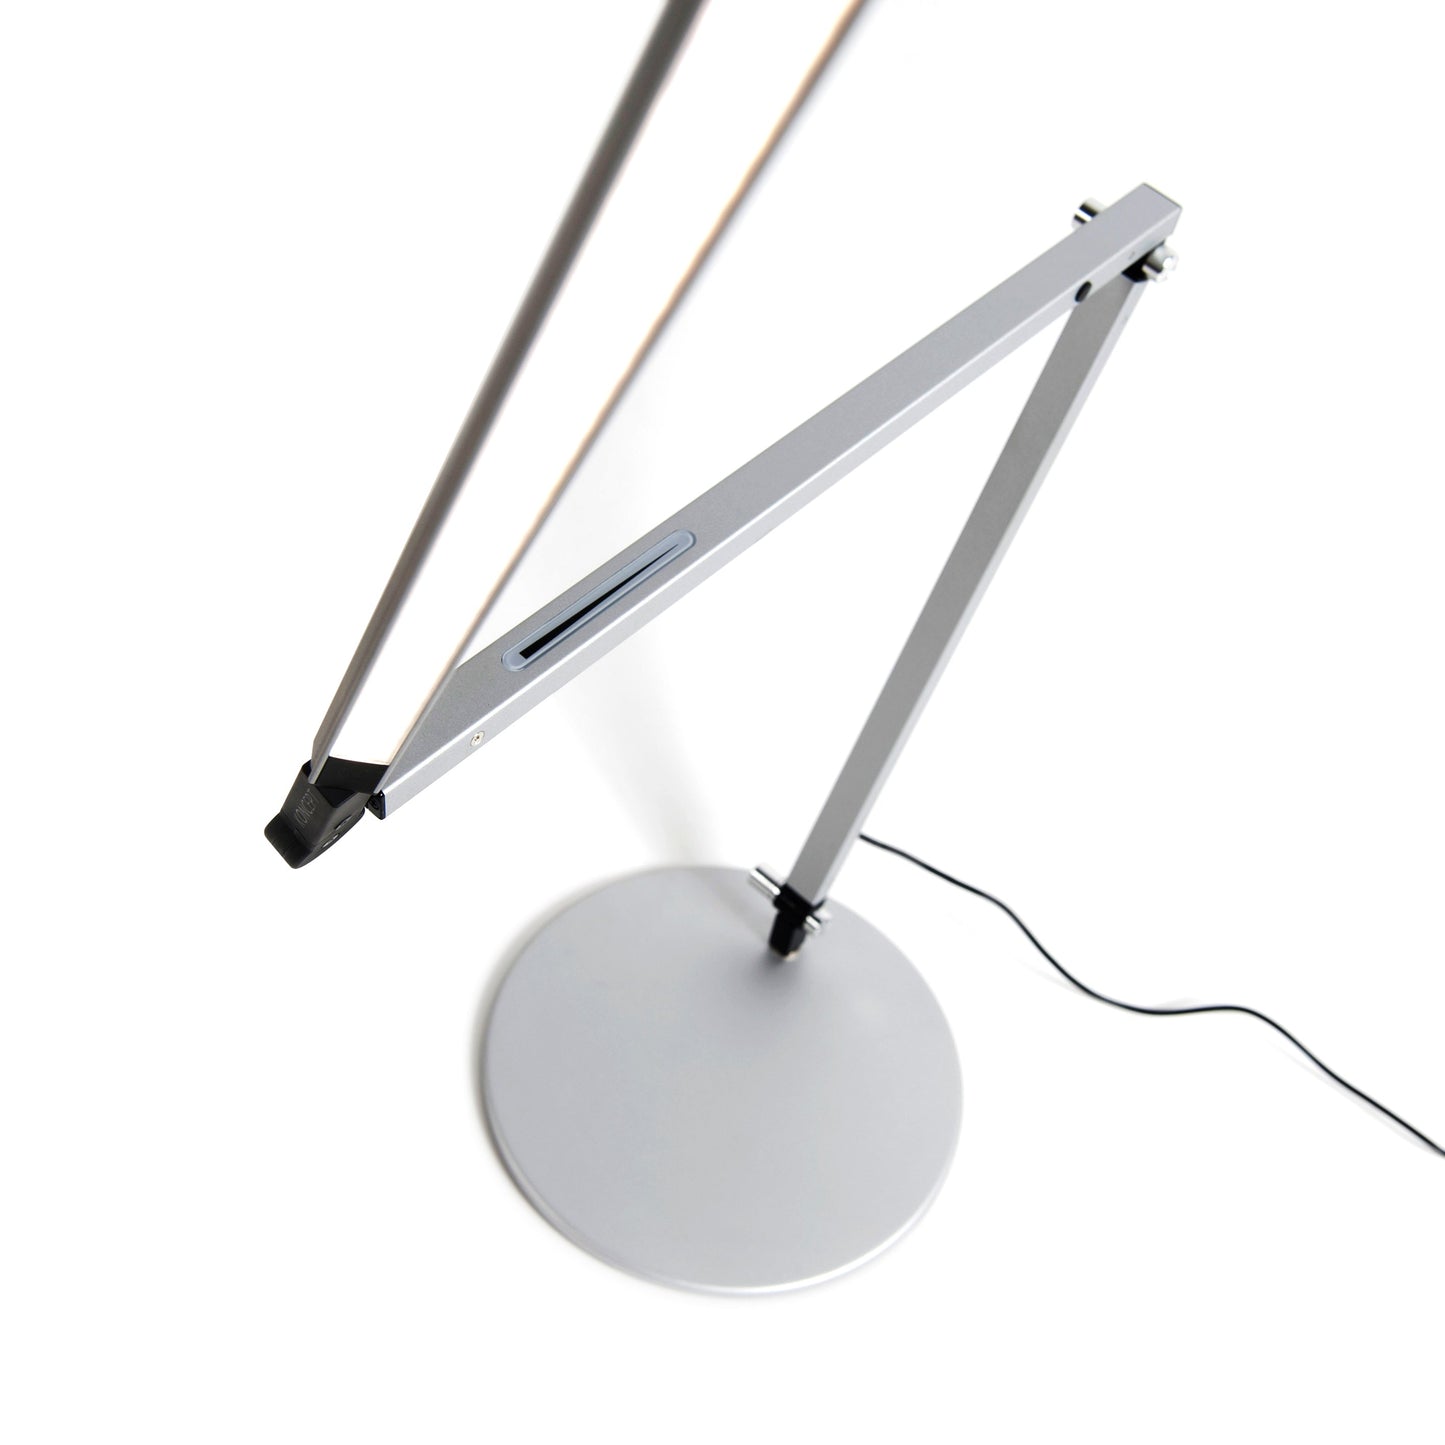 Z-Bar LED Desk Lamp